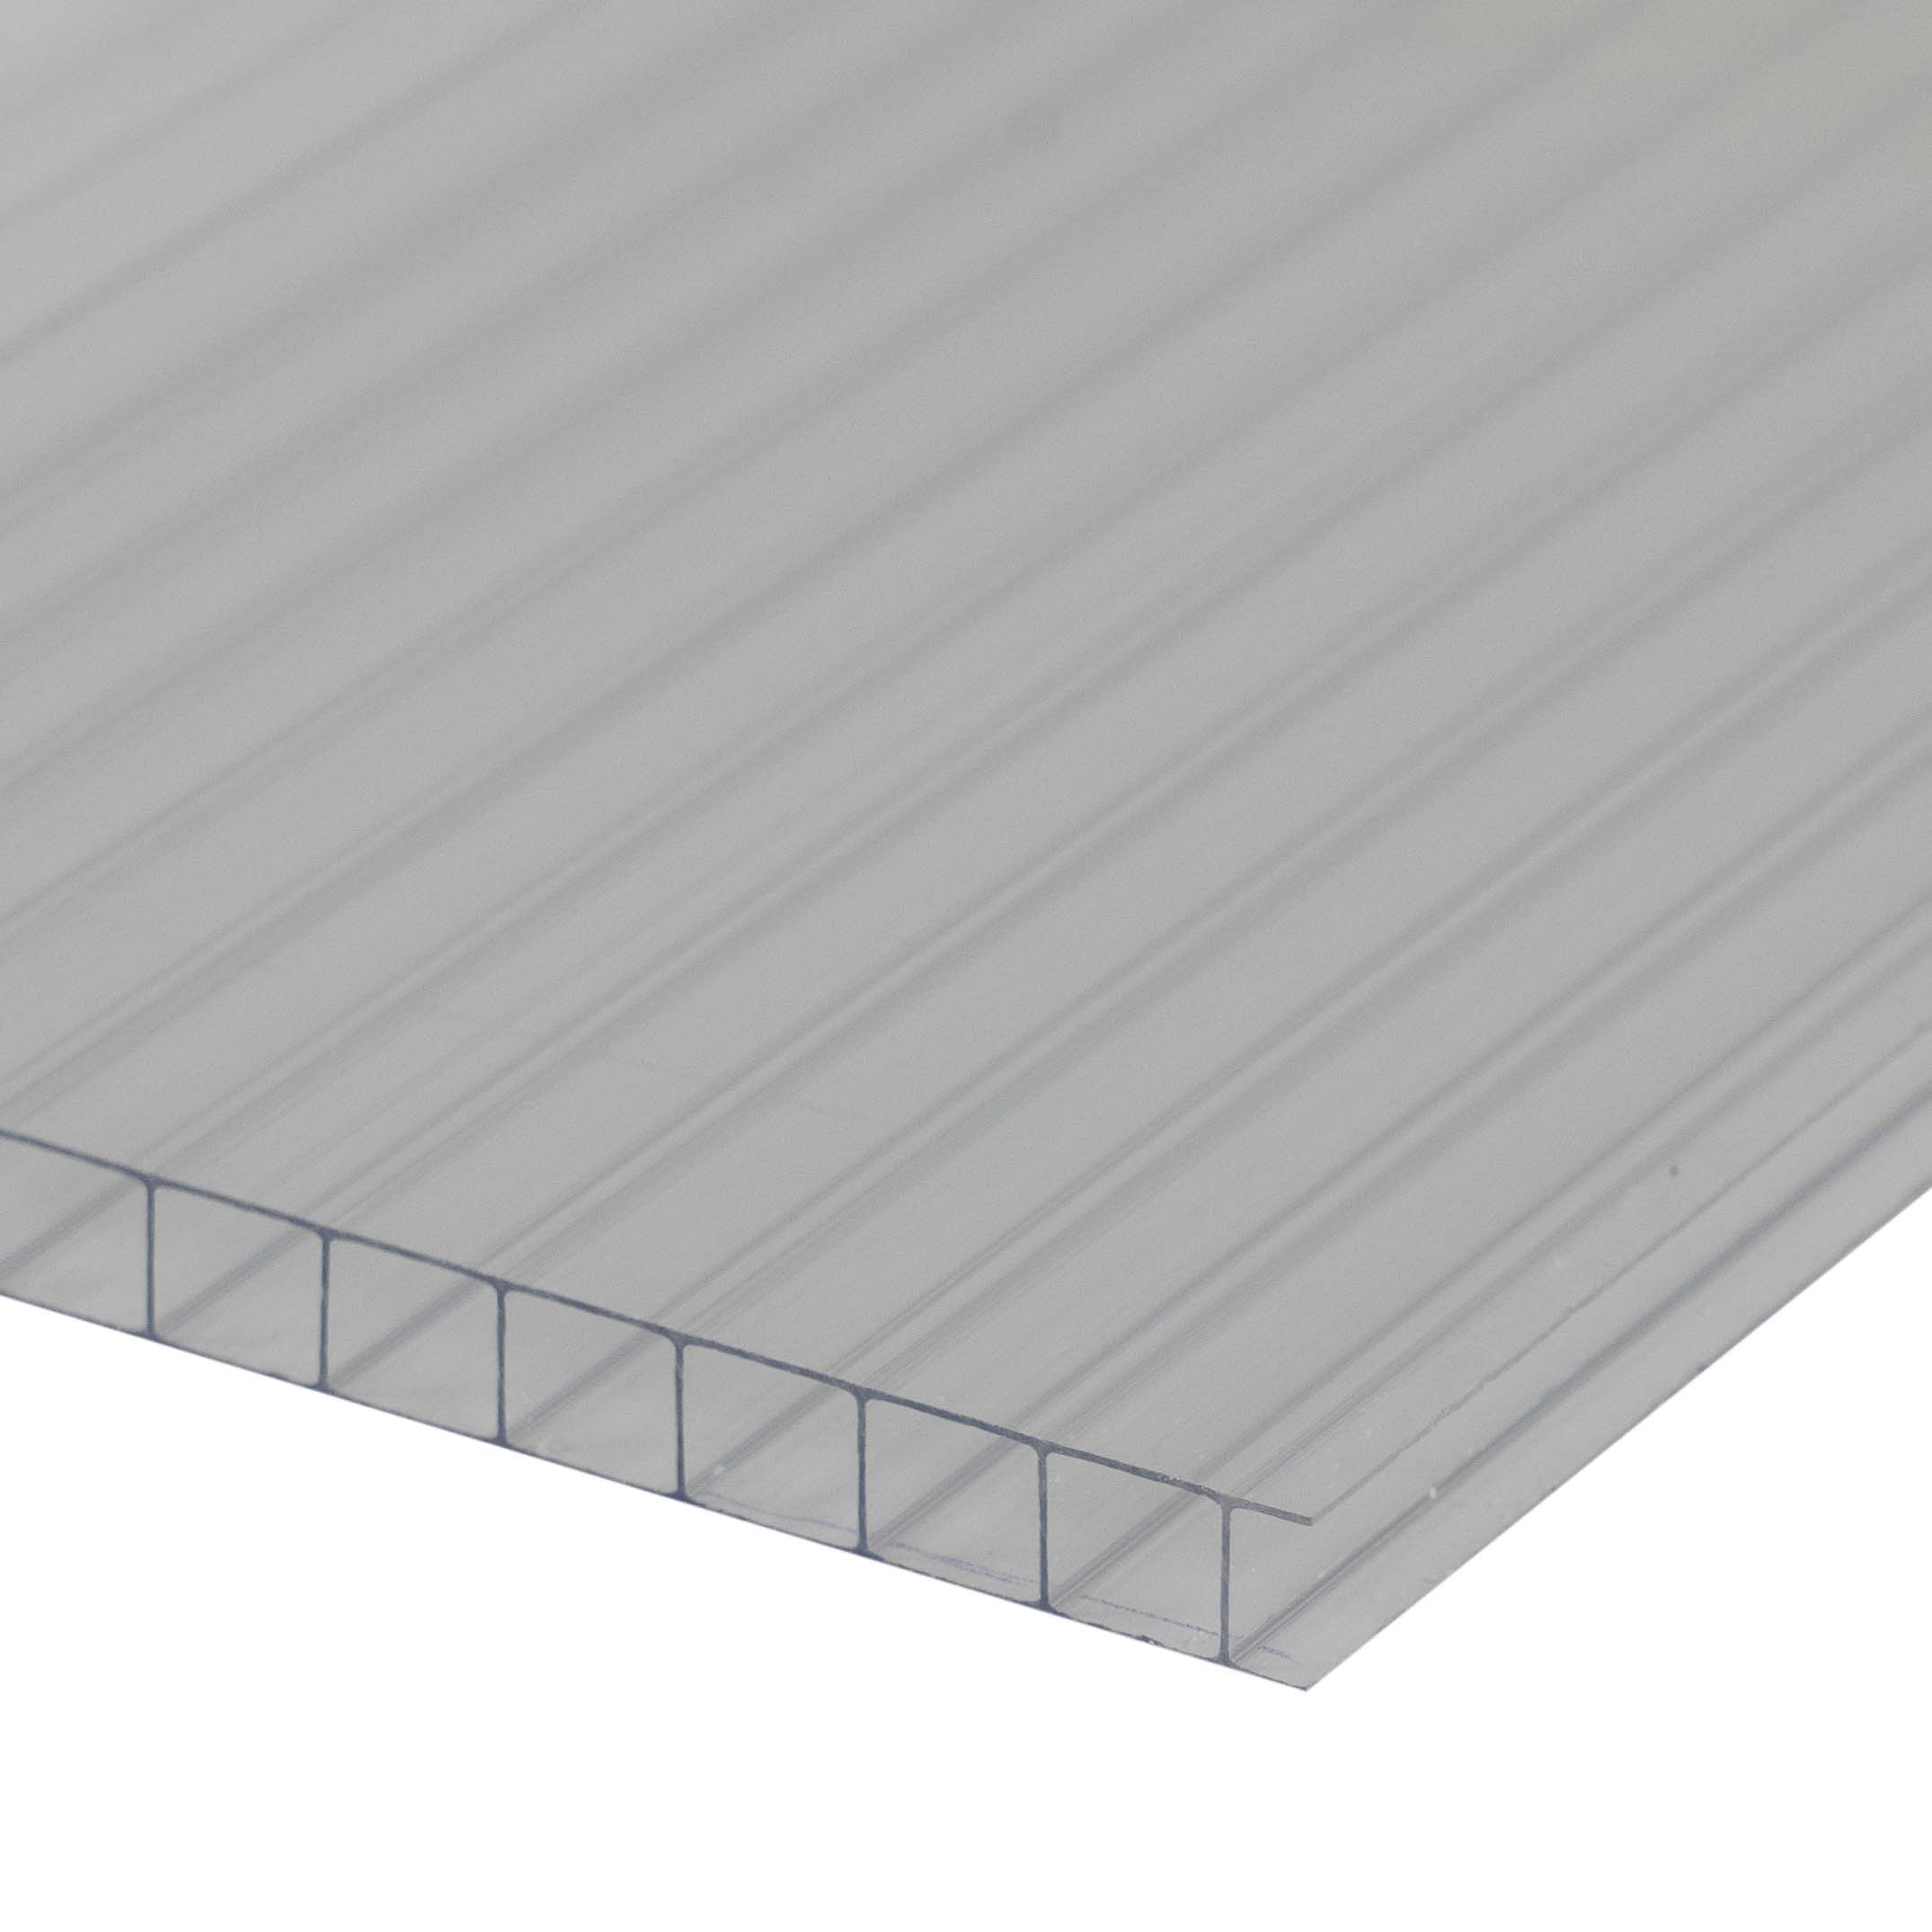 Doppelstegplatte 4 mm Farblos / Klar - Polycarbonat Hohlkammerplatten 